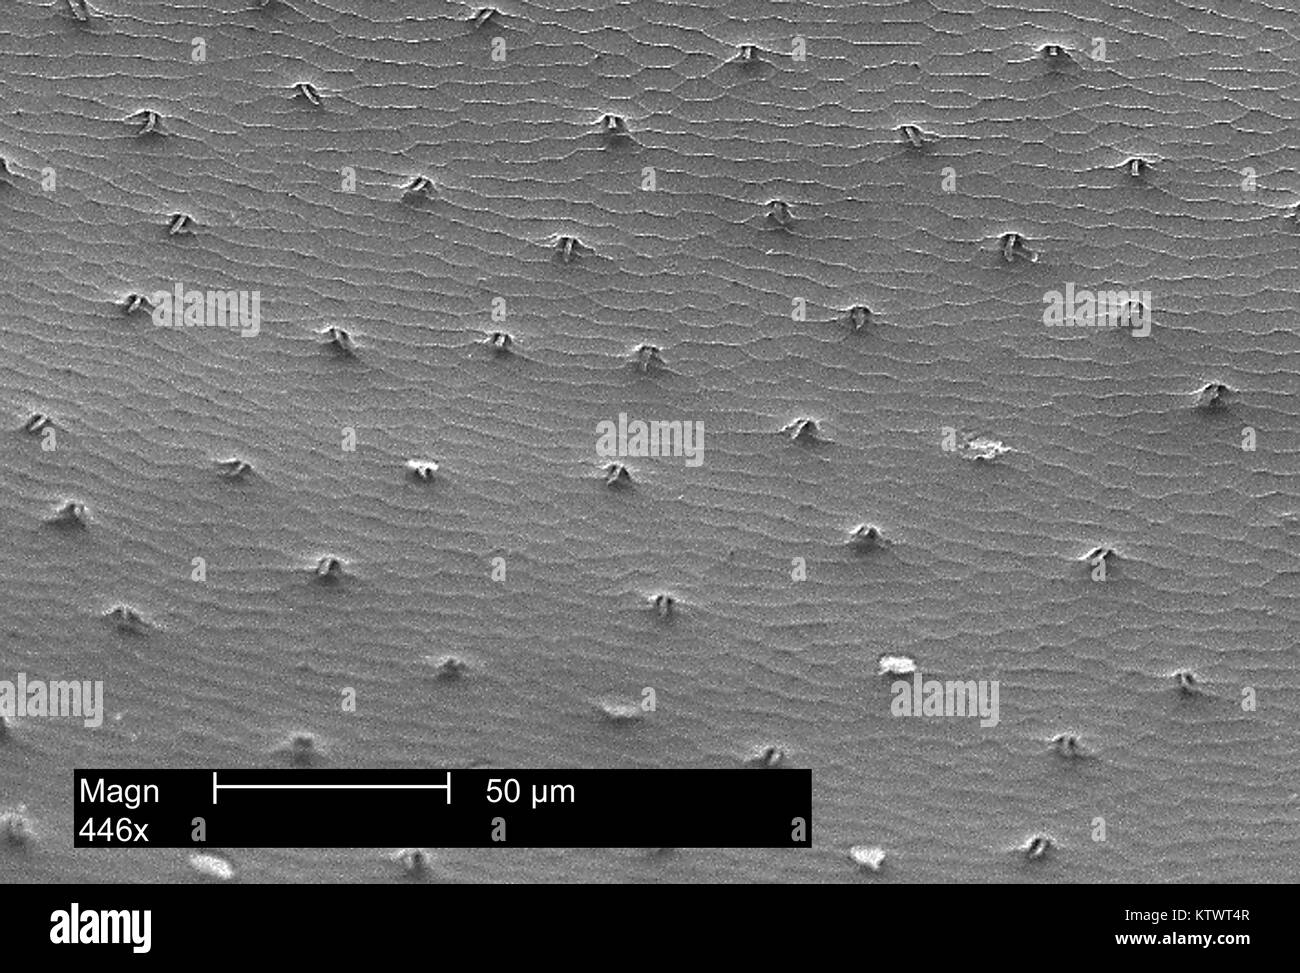 Este es un análisis micrografía de electrones (SEM) de la shell chitinous que cubre la parte posterior de una mariquita magnificados 446X. Nota la fusión de las antiguas escalas de que se compone la coraza protectora, así como el pequeño, el pelo-como las proyecciones que salen de los poros dentro de este manto. Imagen cortesía de CDC, 2002. Foto de stock